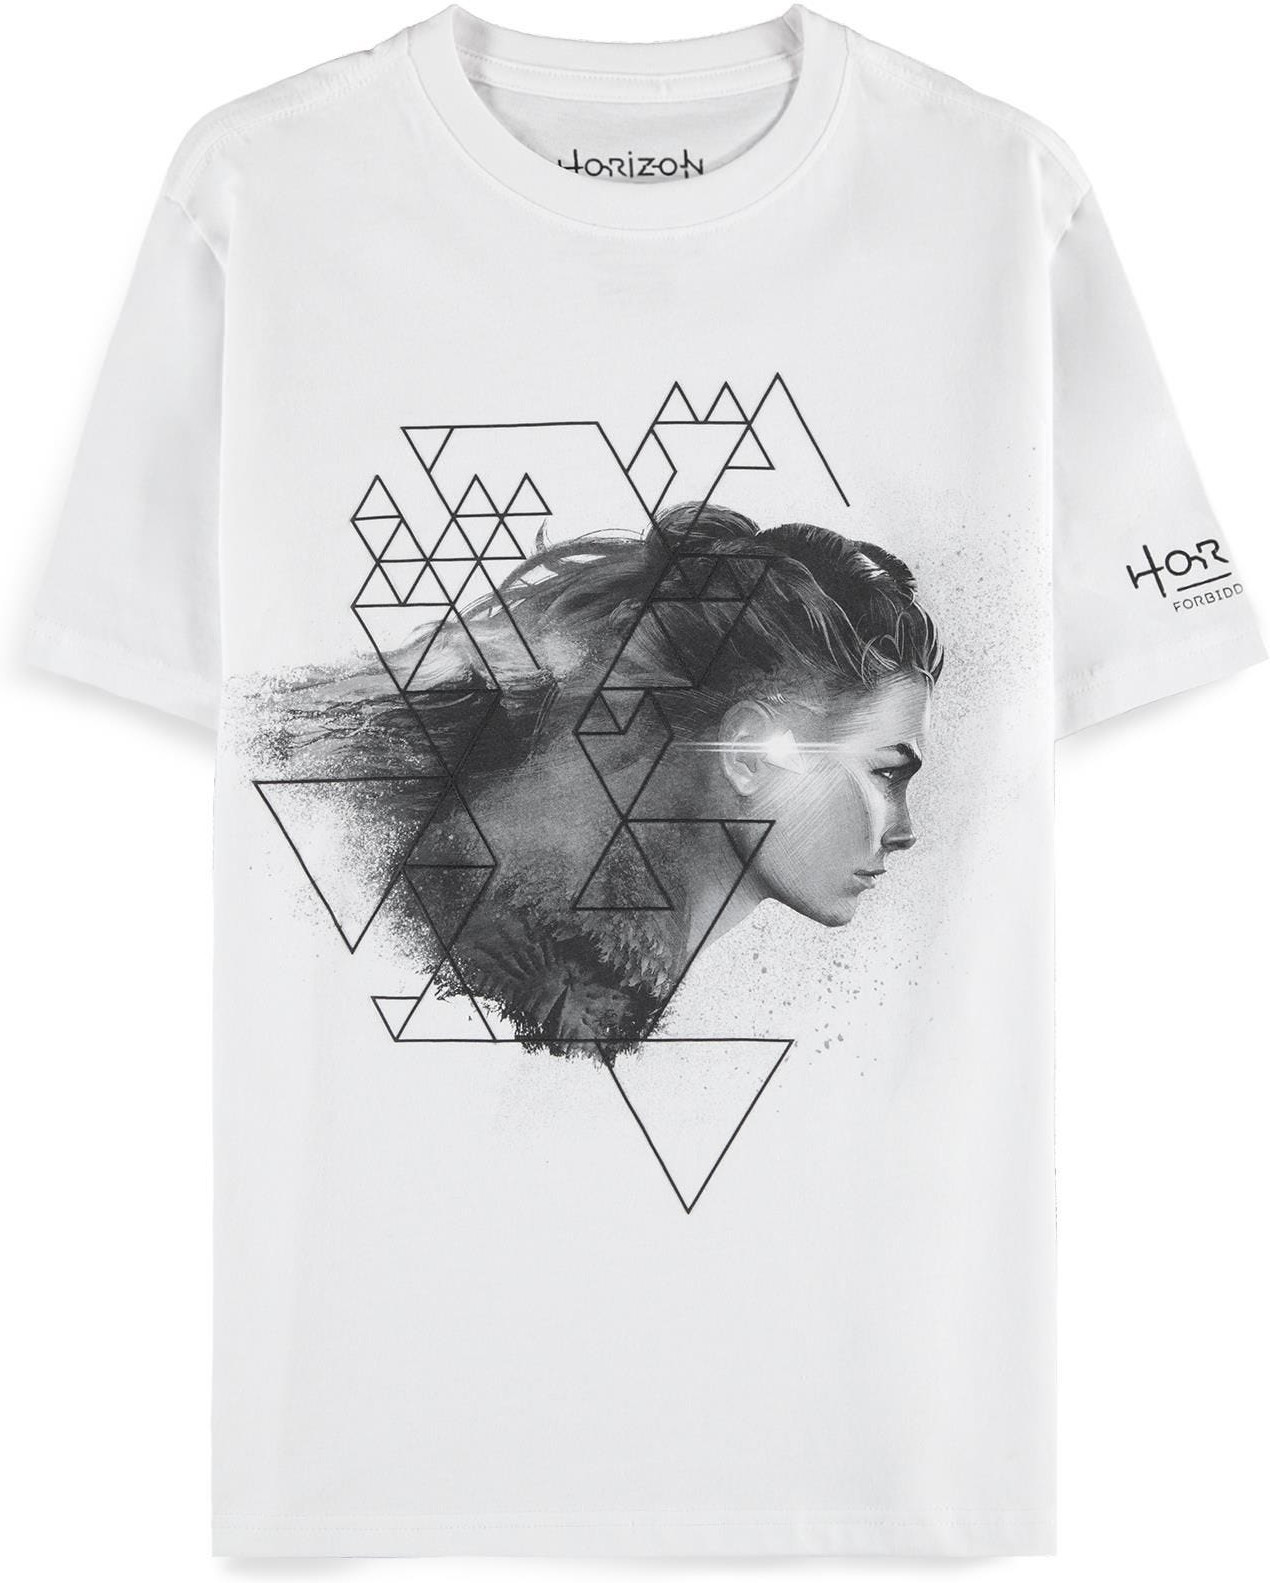 Horizon Forbidden West - Aloy - Women's Short Sleeved T-shirt